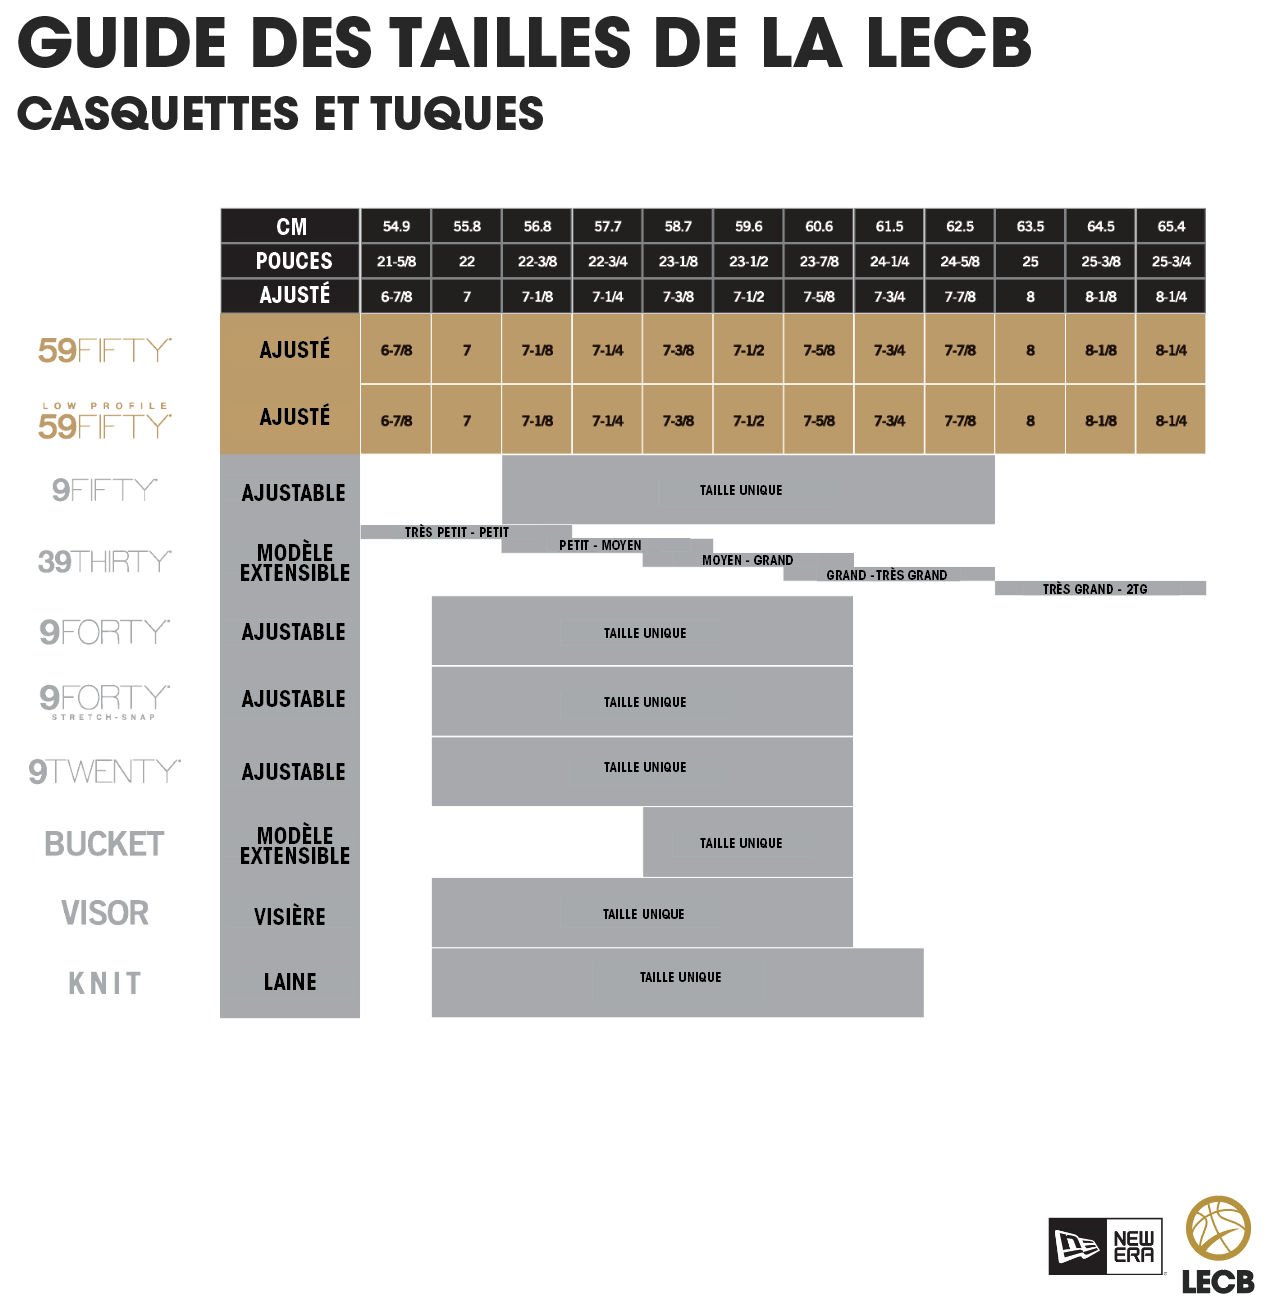 Guide des tailles de la LECB